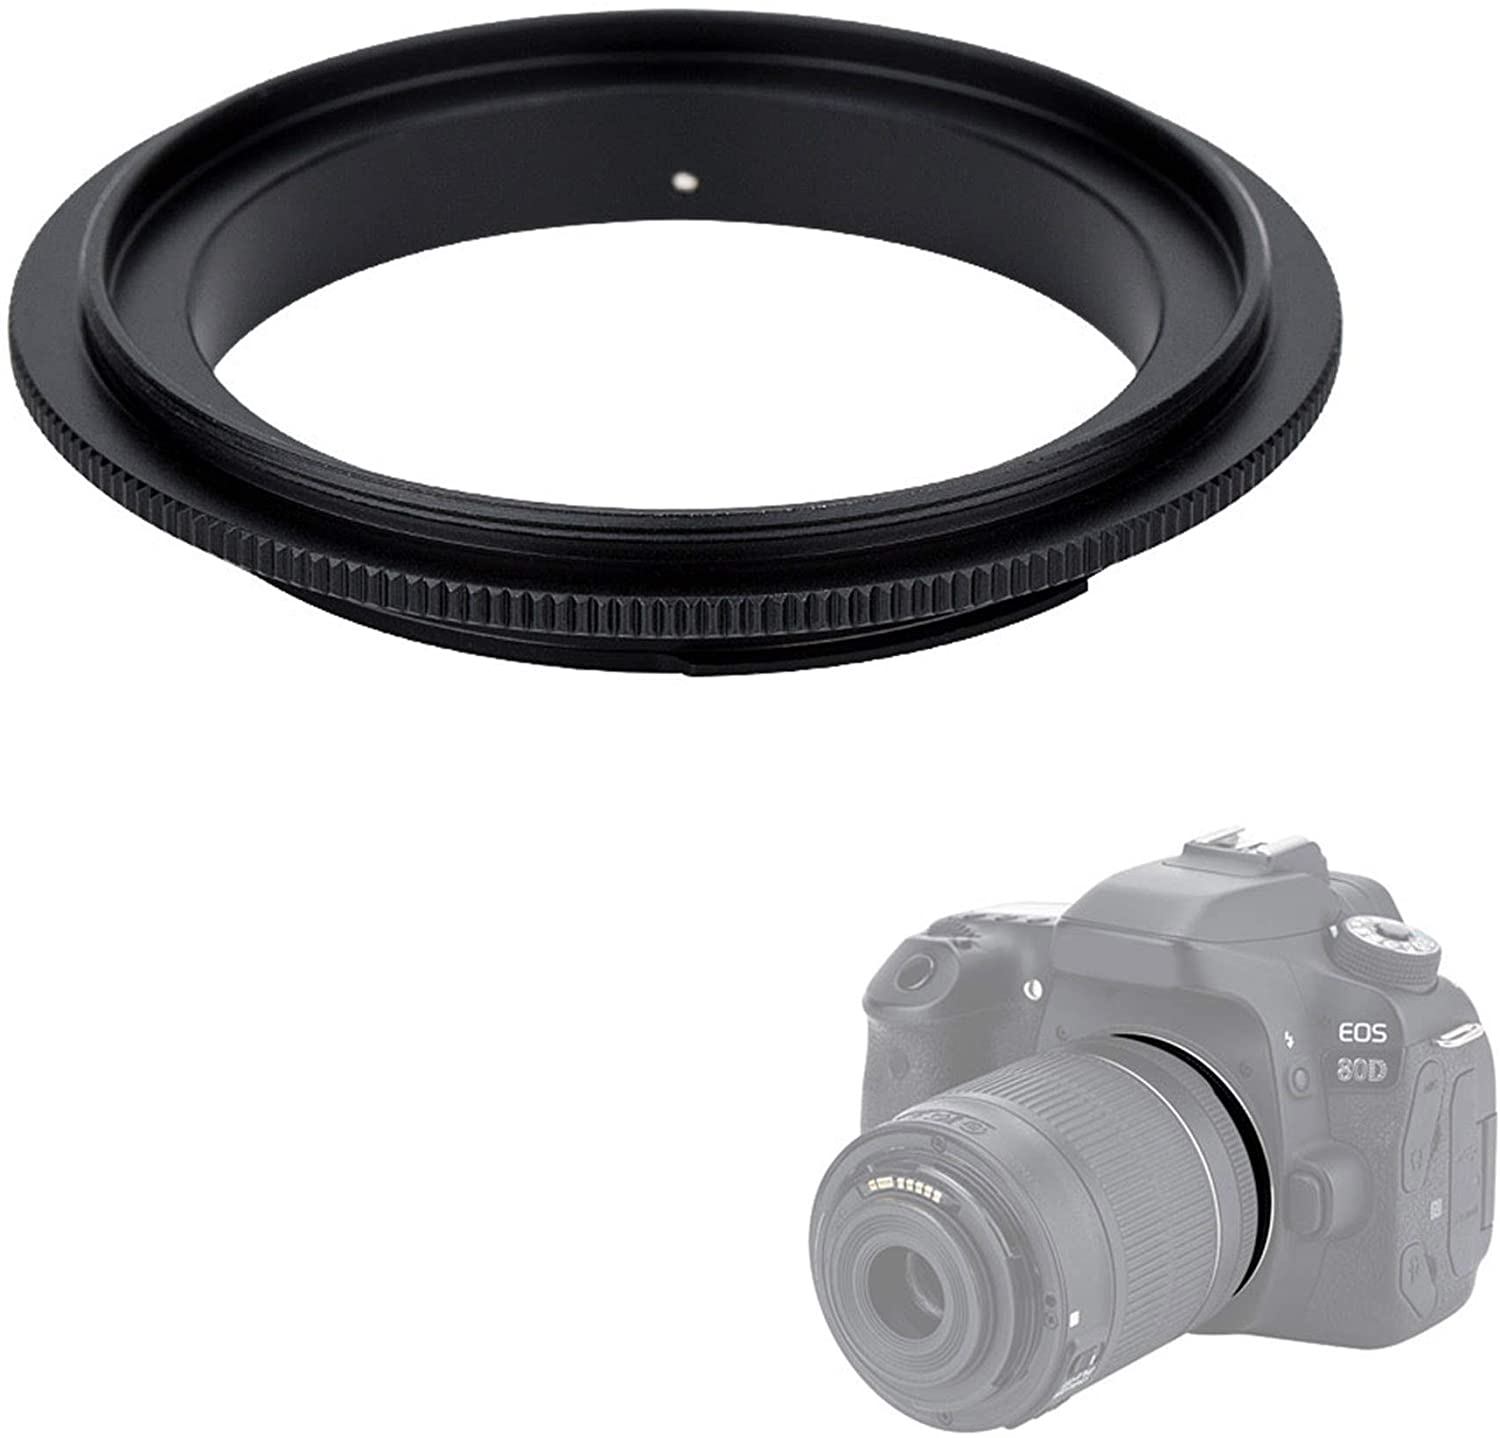 Aluminium 67Mm Macro Reverse Lens Adapter Ring Voor Canon Eos 67 Ef Mount 5d 50d 60d 5d2 7d 70d 18-135Mm Lens Camera